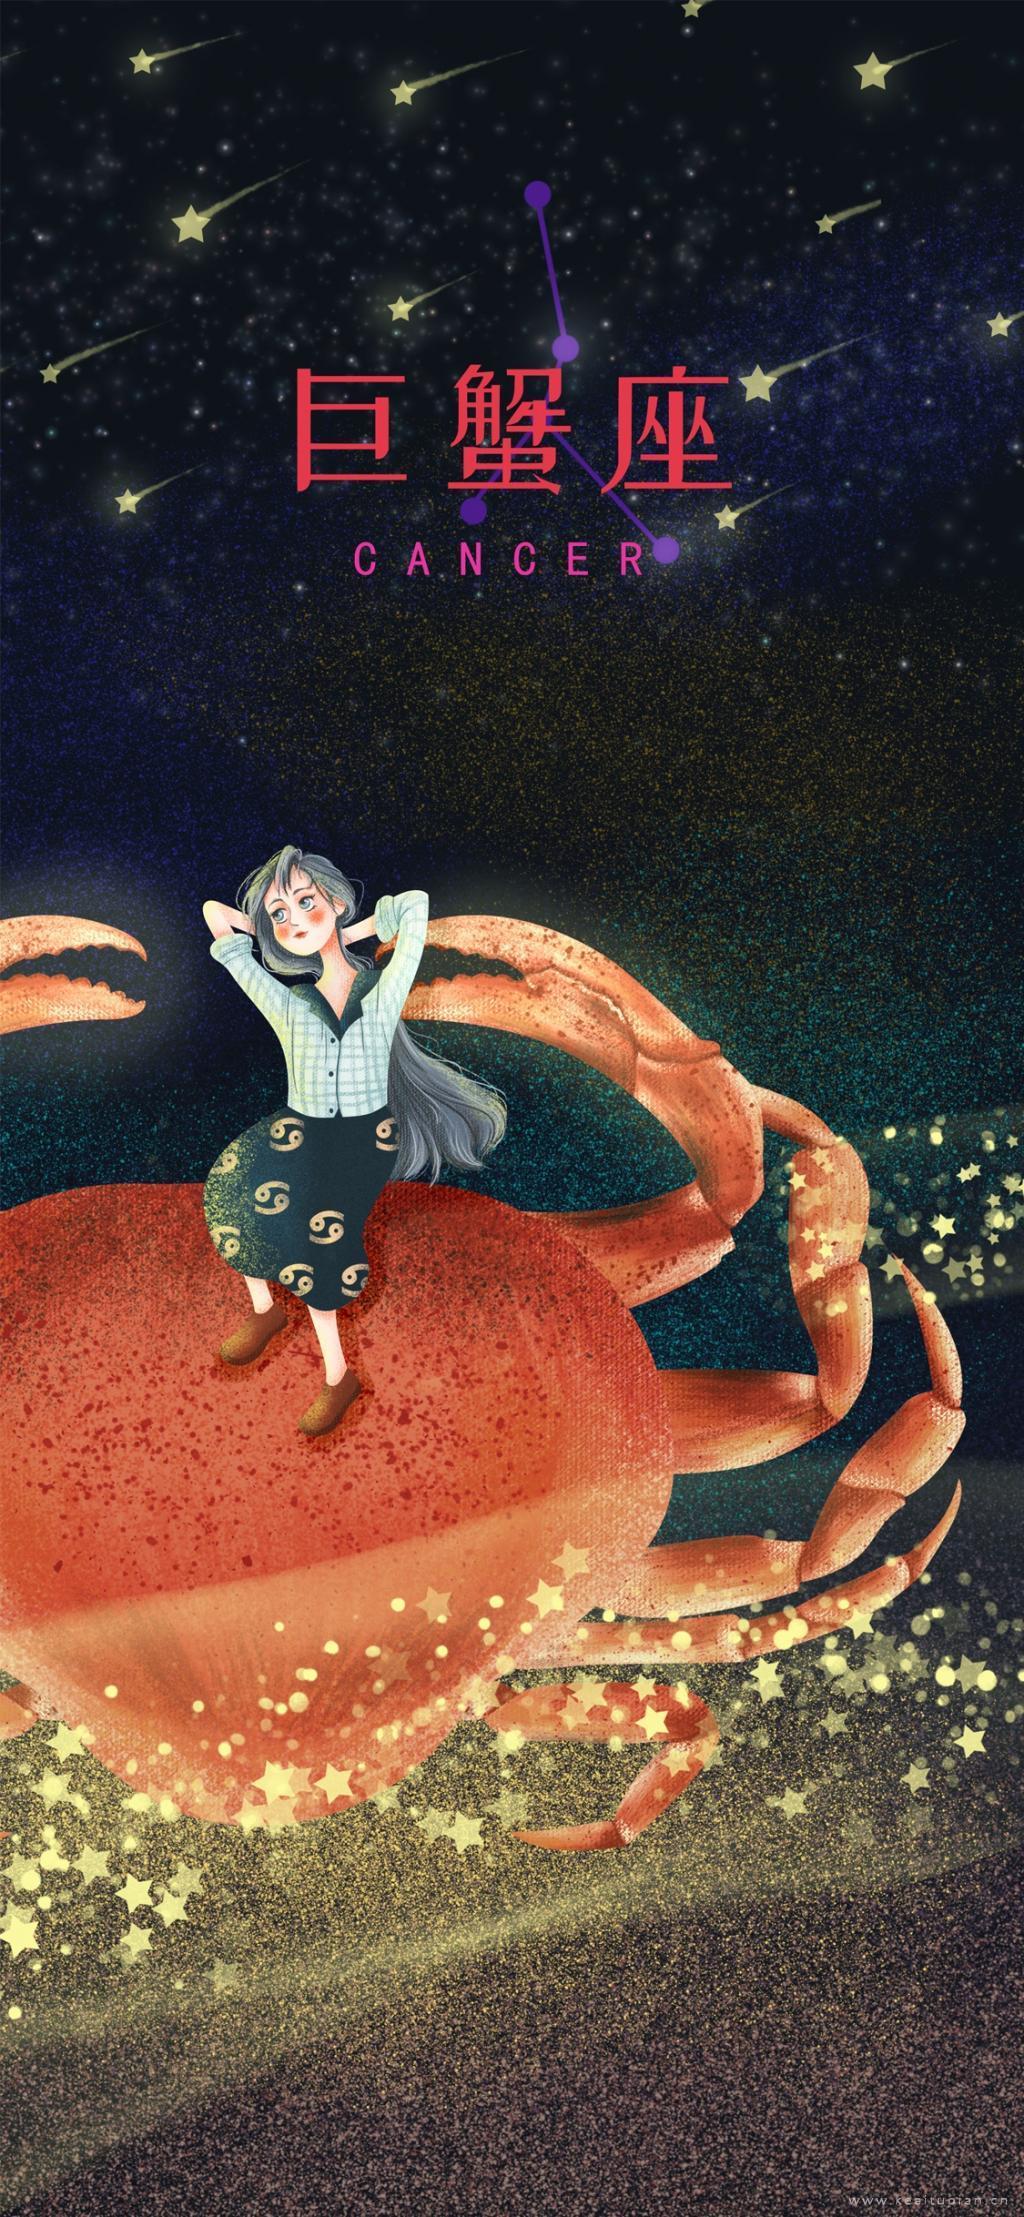 梦里有流星十二星座之巨蟹座女孩插画图片